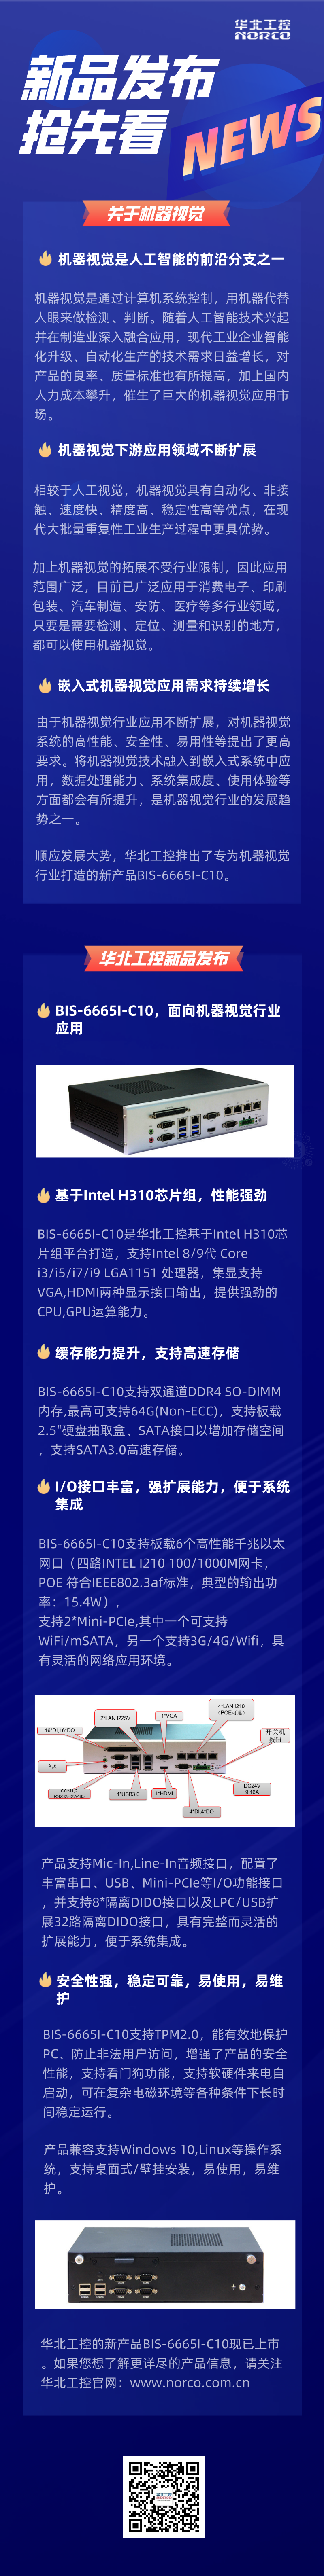 华北工控新产品BIS-6665I-C10工控机.png